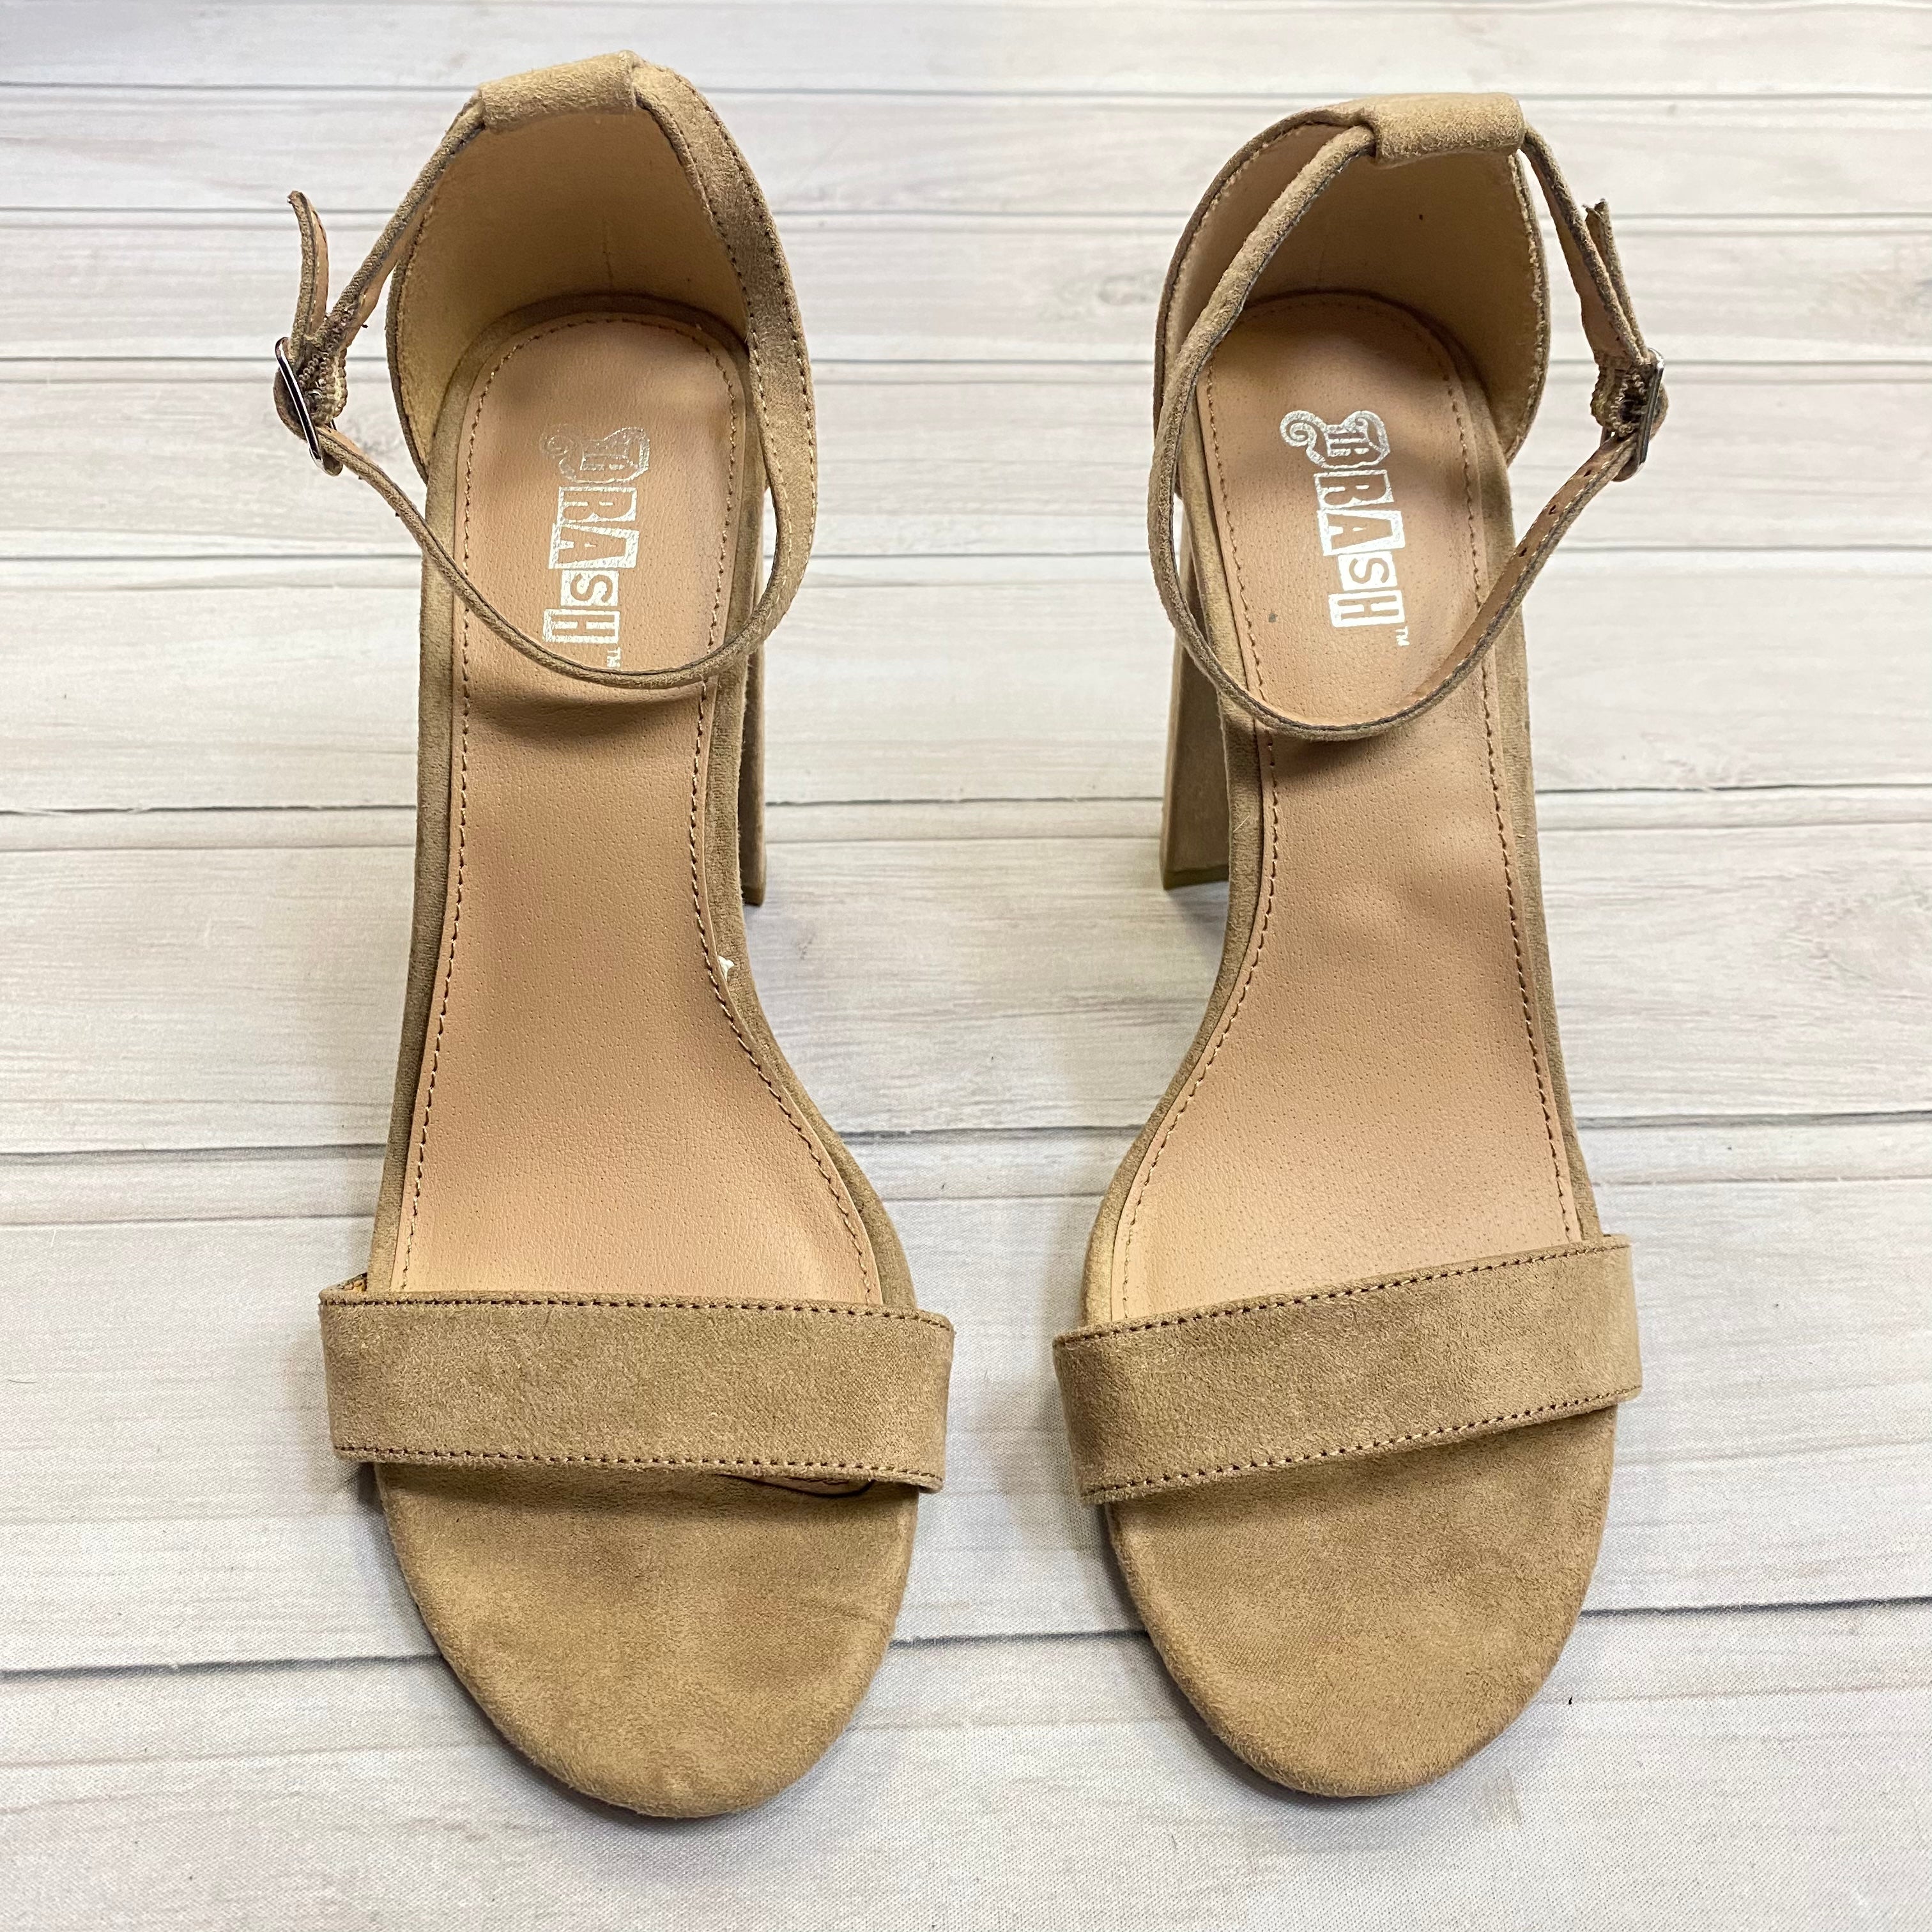 BRASH Shoes Size 6.5 WOMEN'S Strapy Gold Chain SANDAL BLACK 3.5